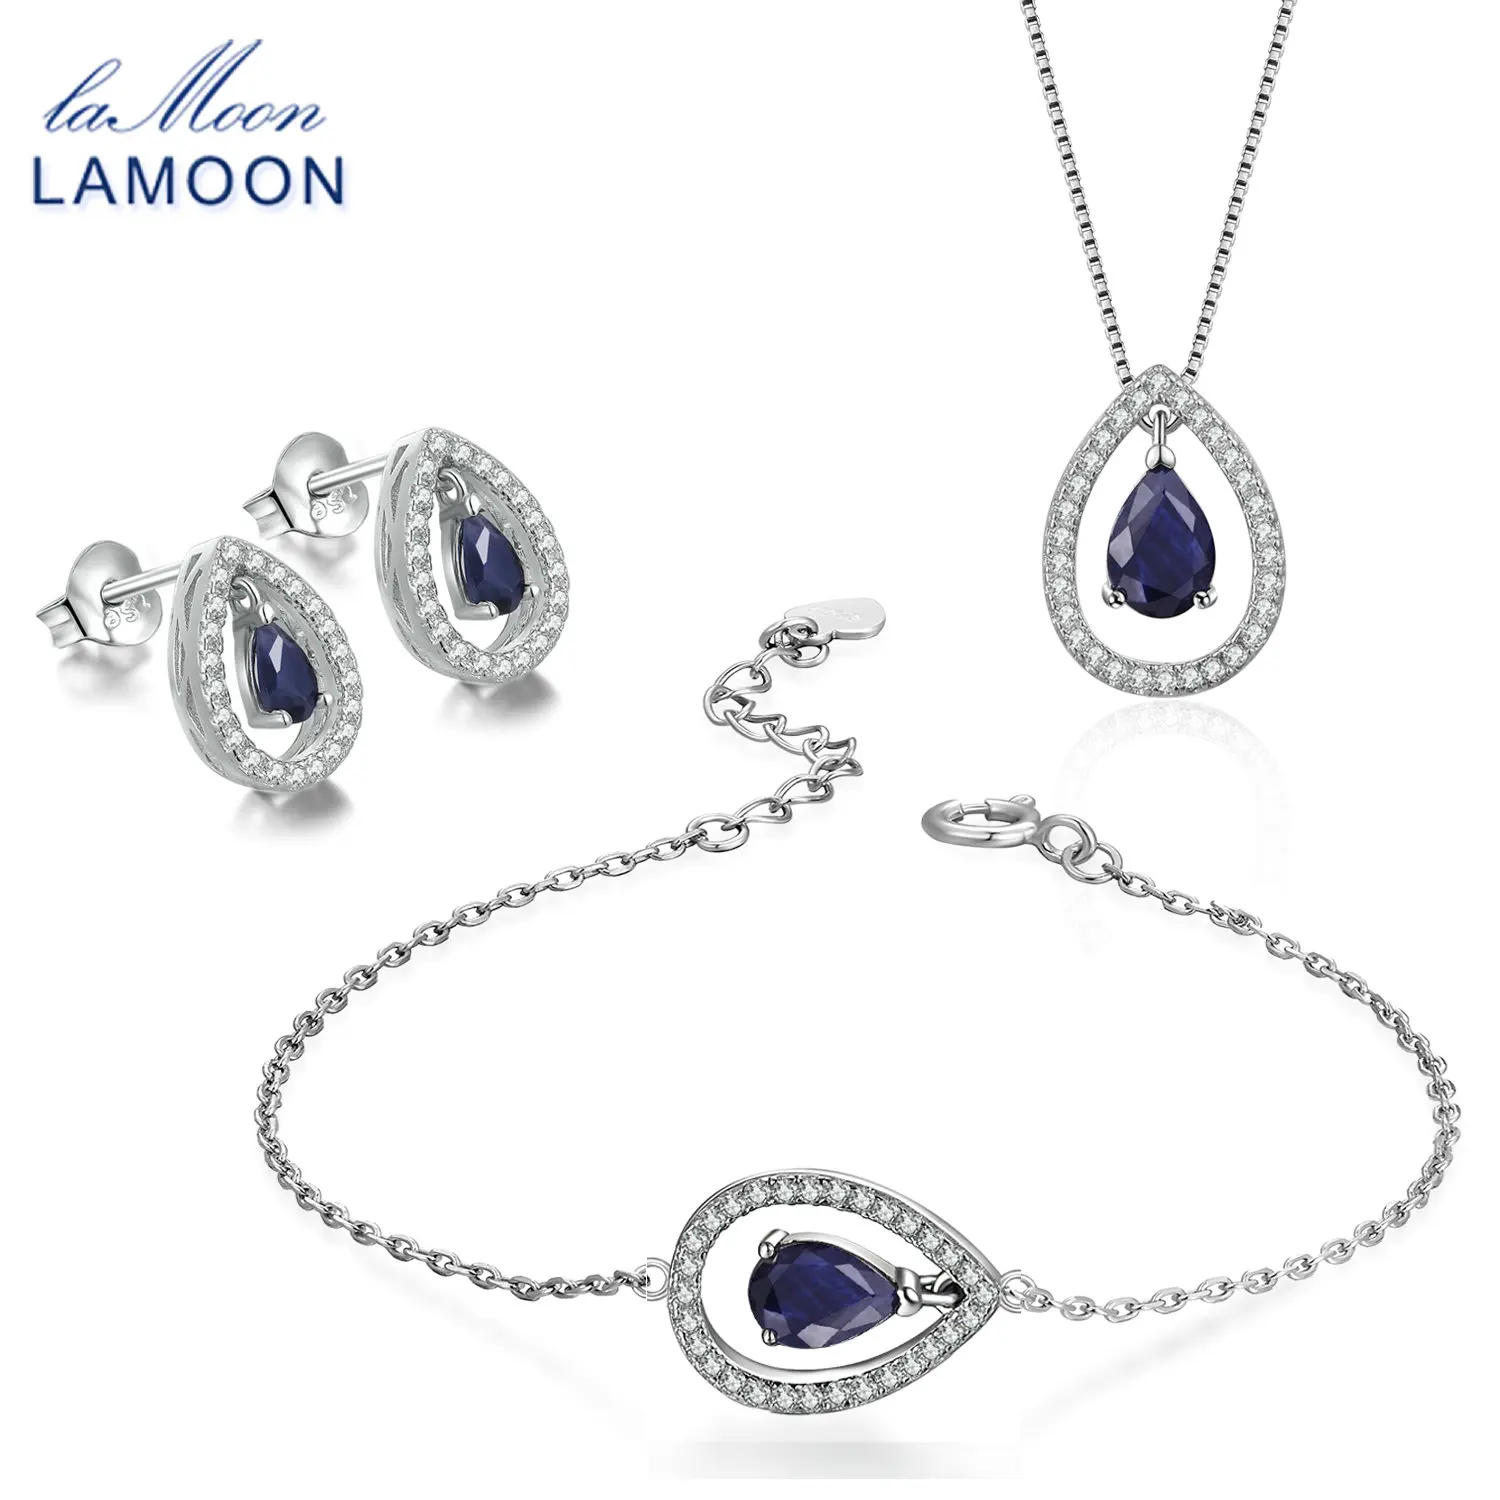 LAMOON x5мм слеза настоящий синий сапфир 925 пробы-серебро-ювелирный набор с короной S925 для женщин V040-4